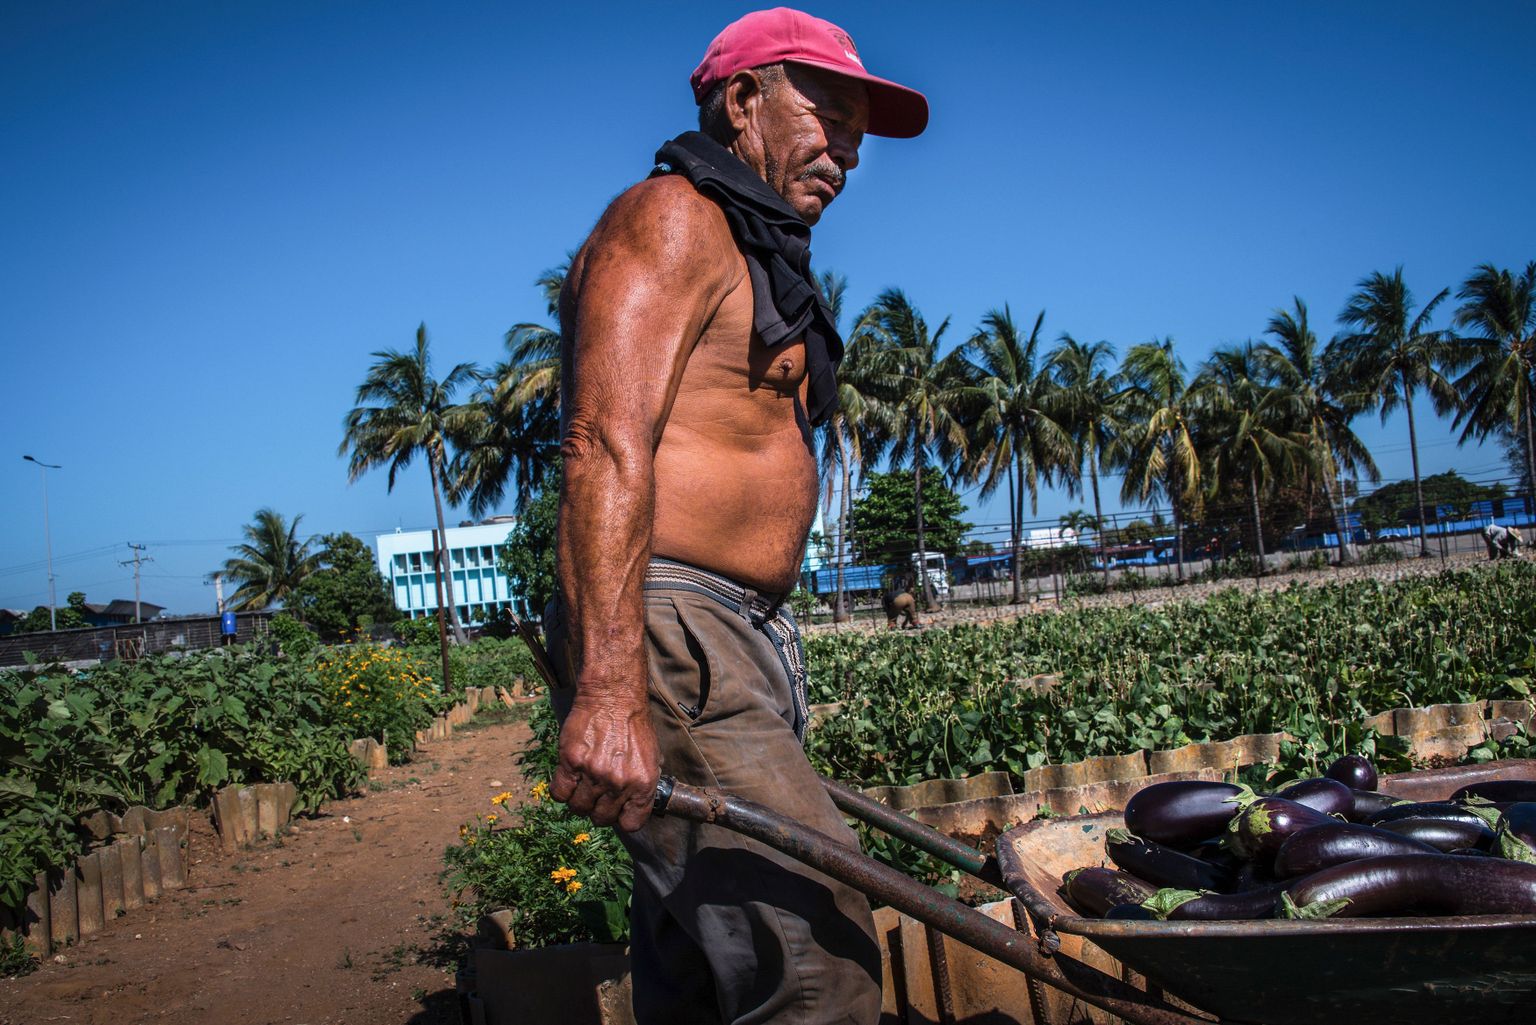 Kuuba farmer Havanas